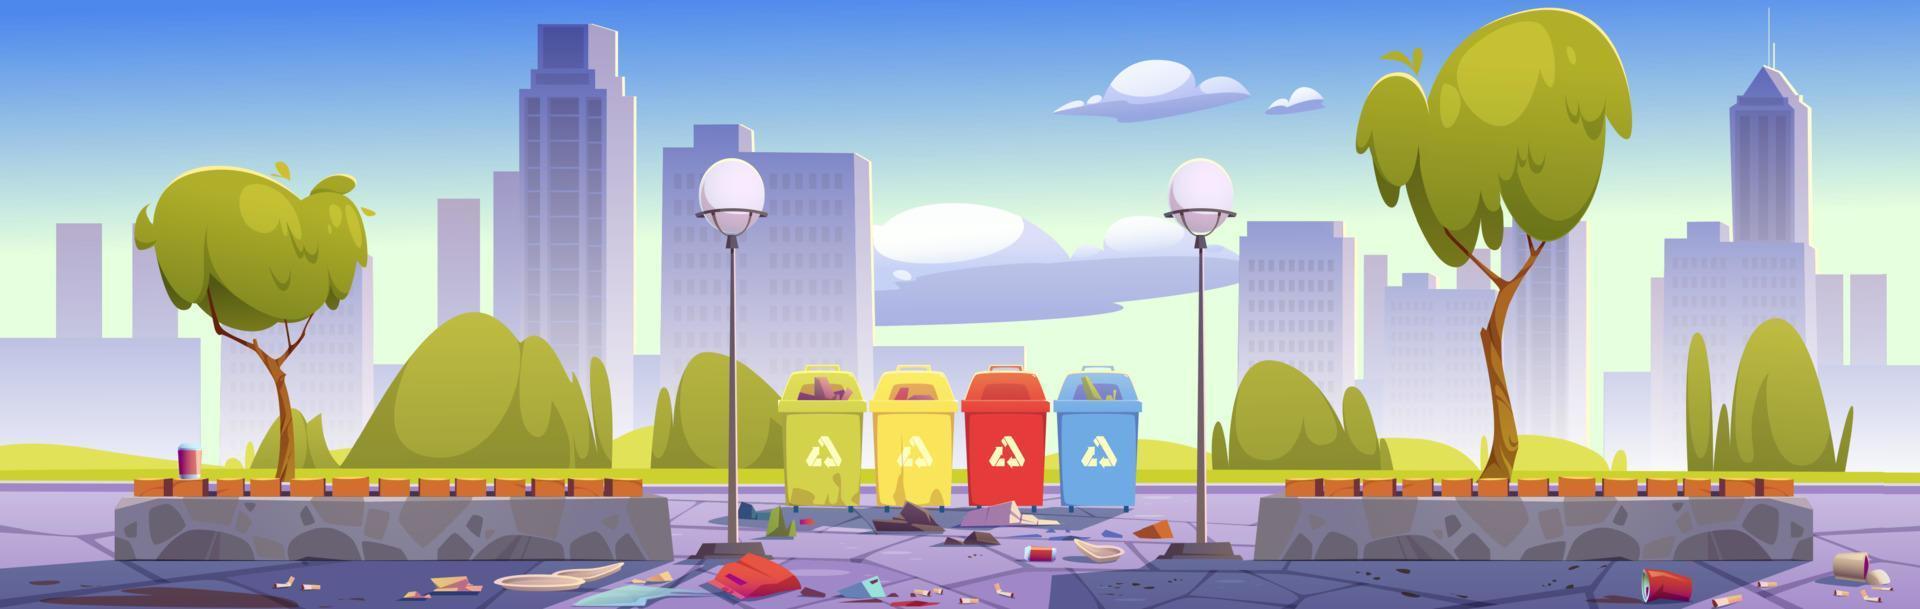 parque de la ciudad sucia con papeleras y basura vector